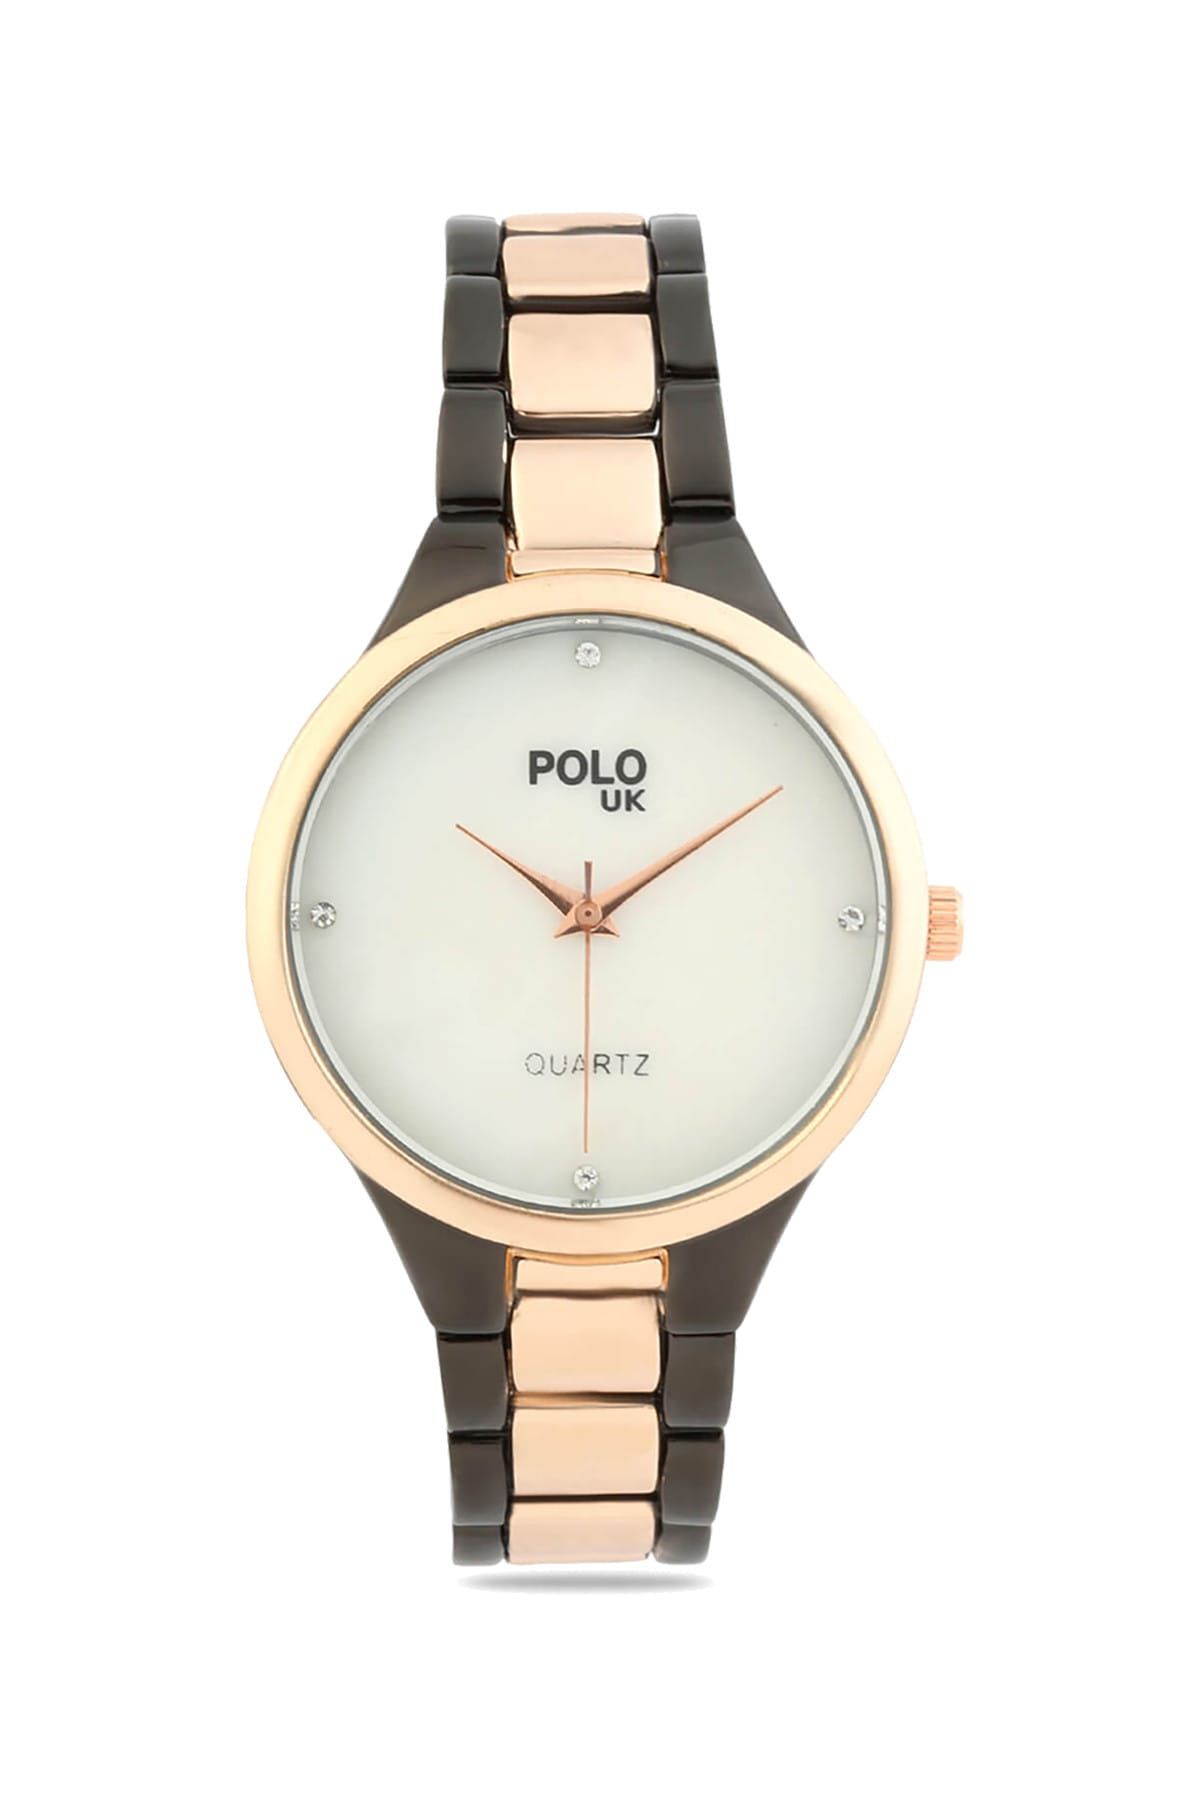 Polo U.K. Kadın Kol Saati POLOUK 5379